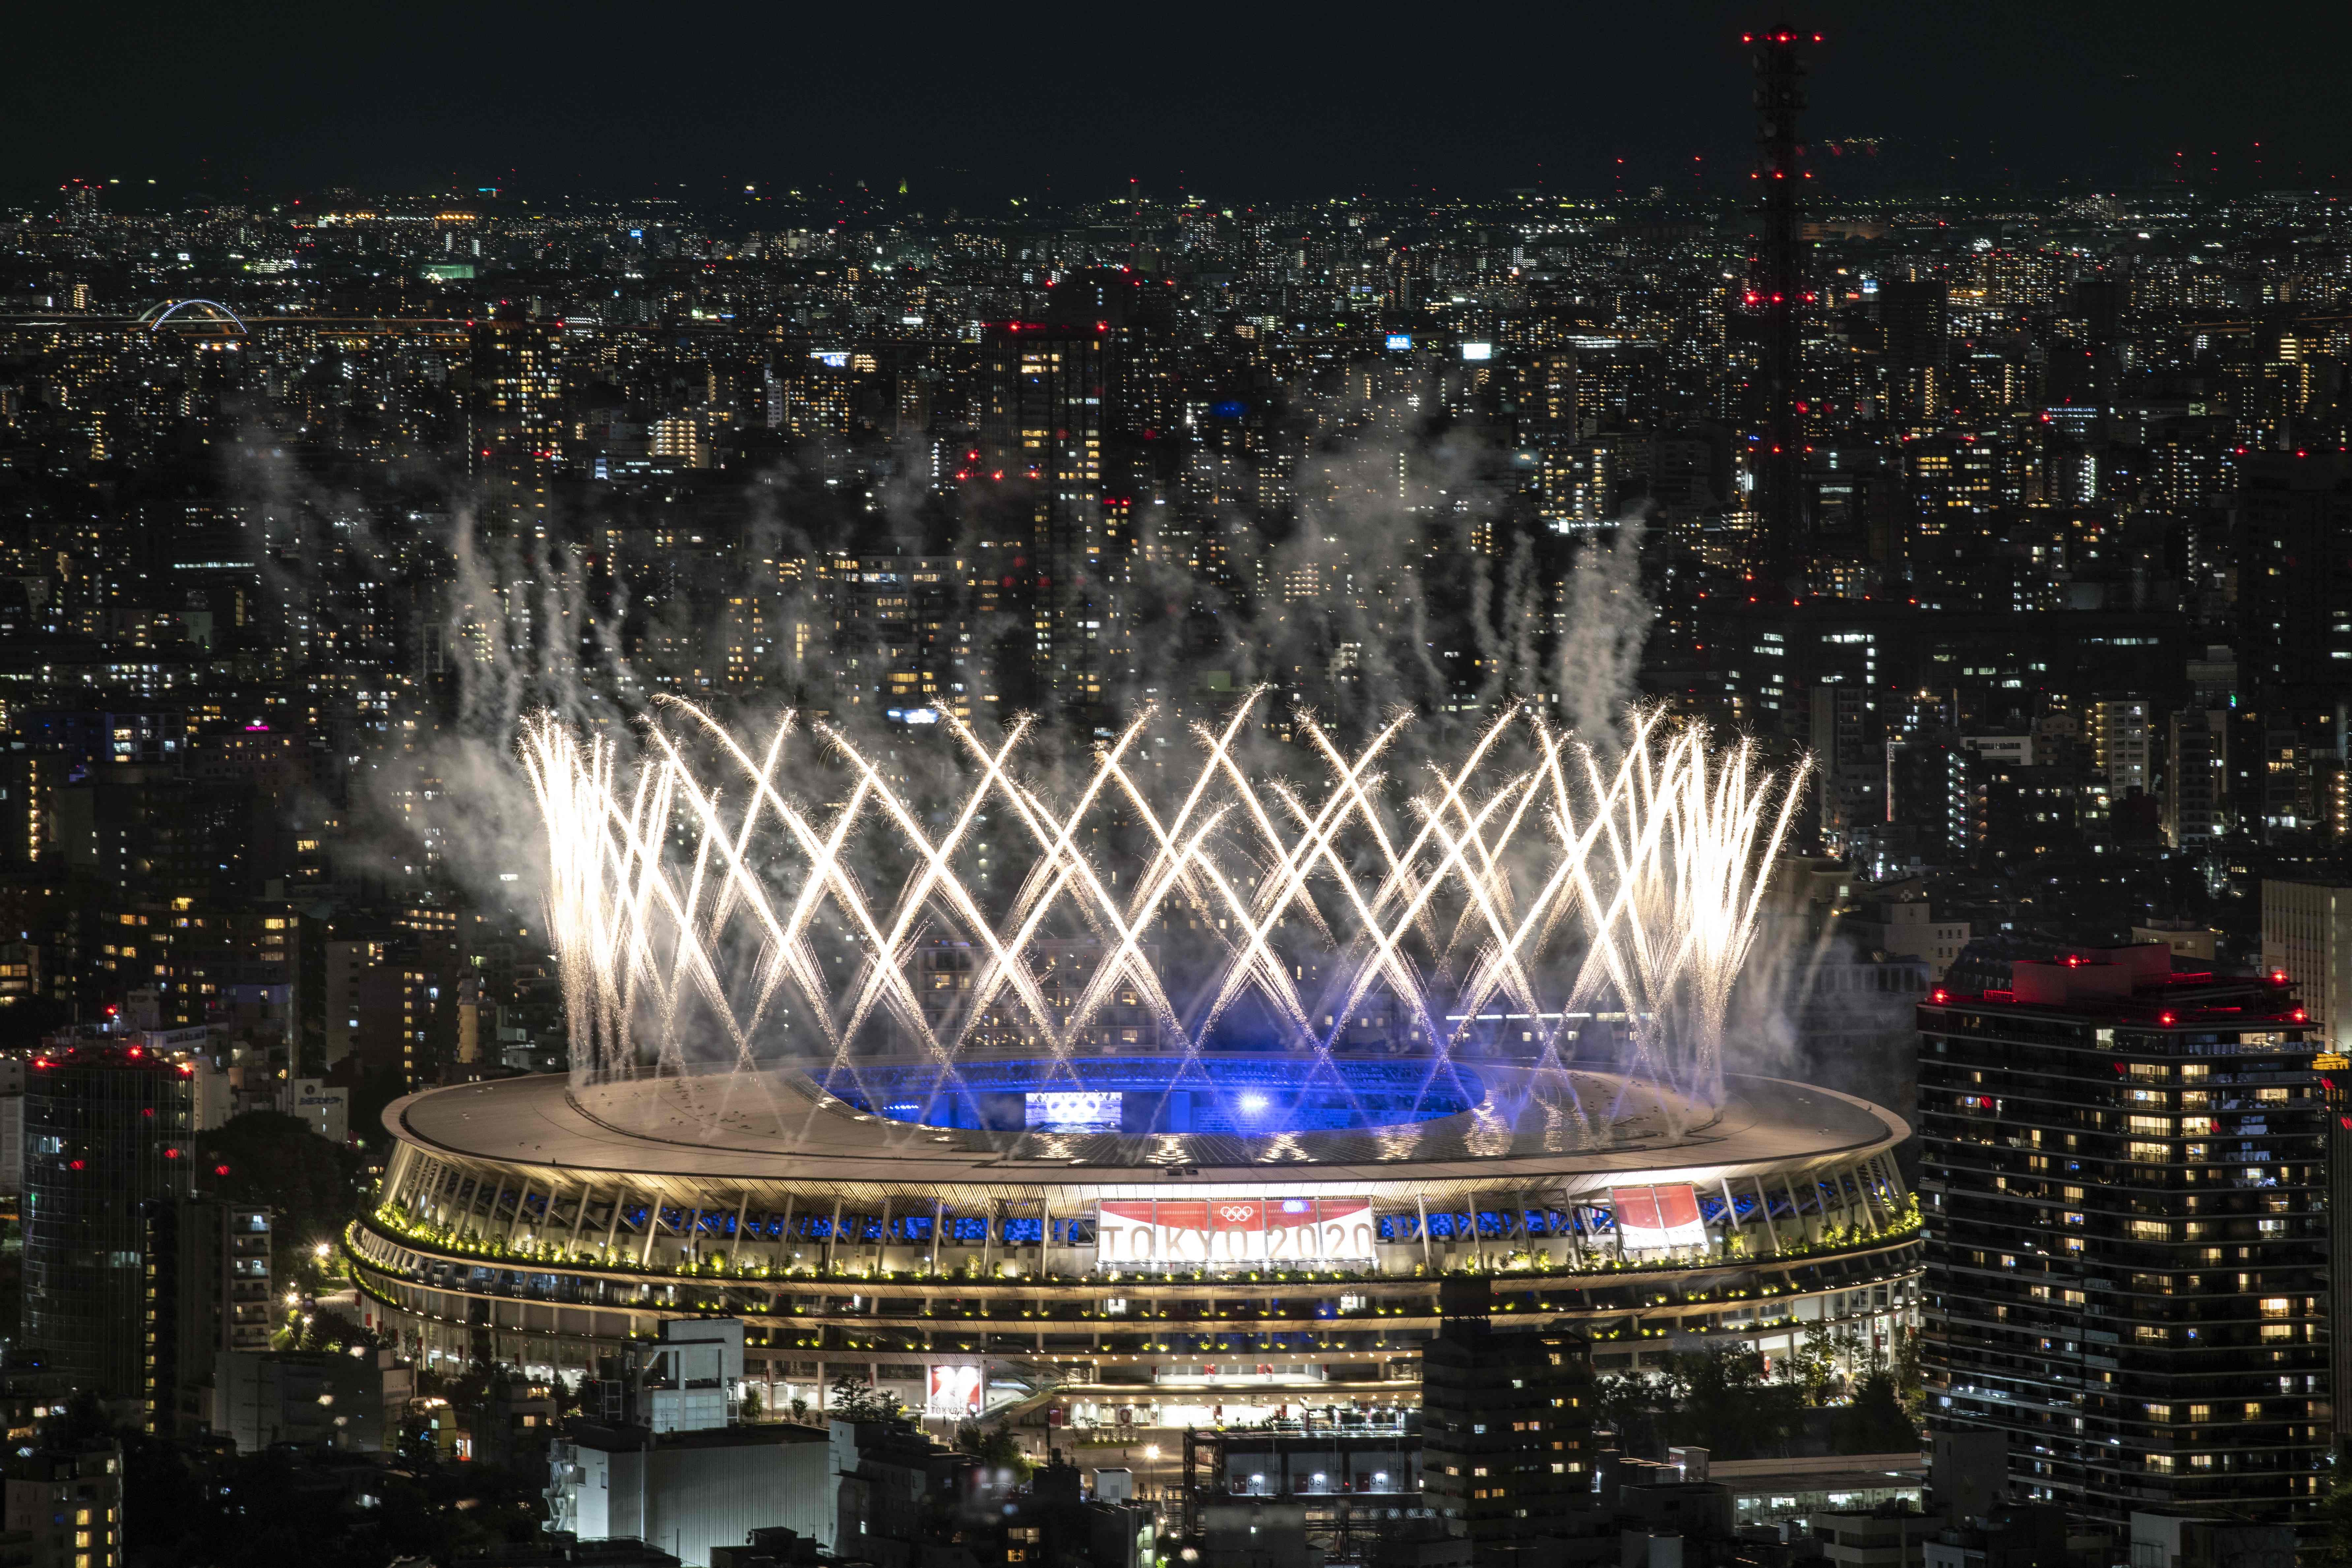 闭幕式上的烟花照亮了奥林匹克体育场的上空，这意味著东京奥运在进行了3周后圆满结束。（法新社照片）

